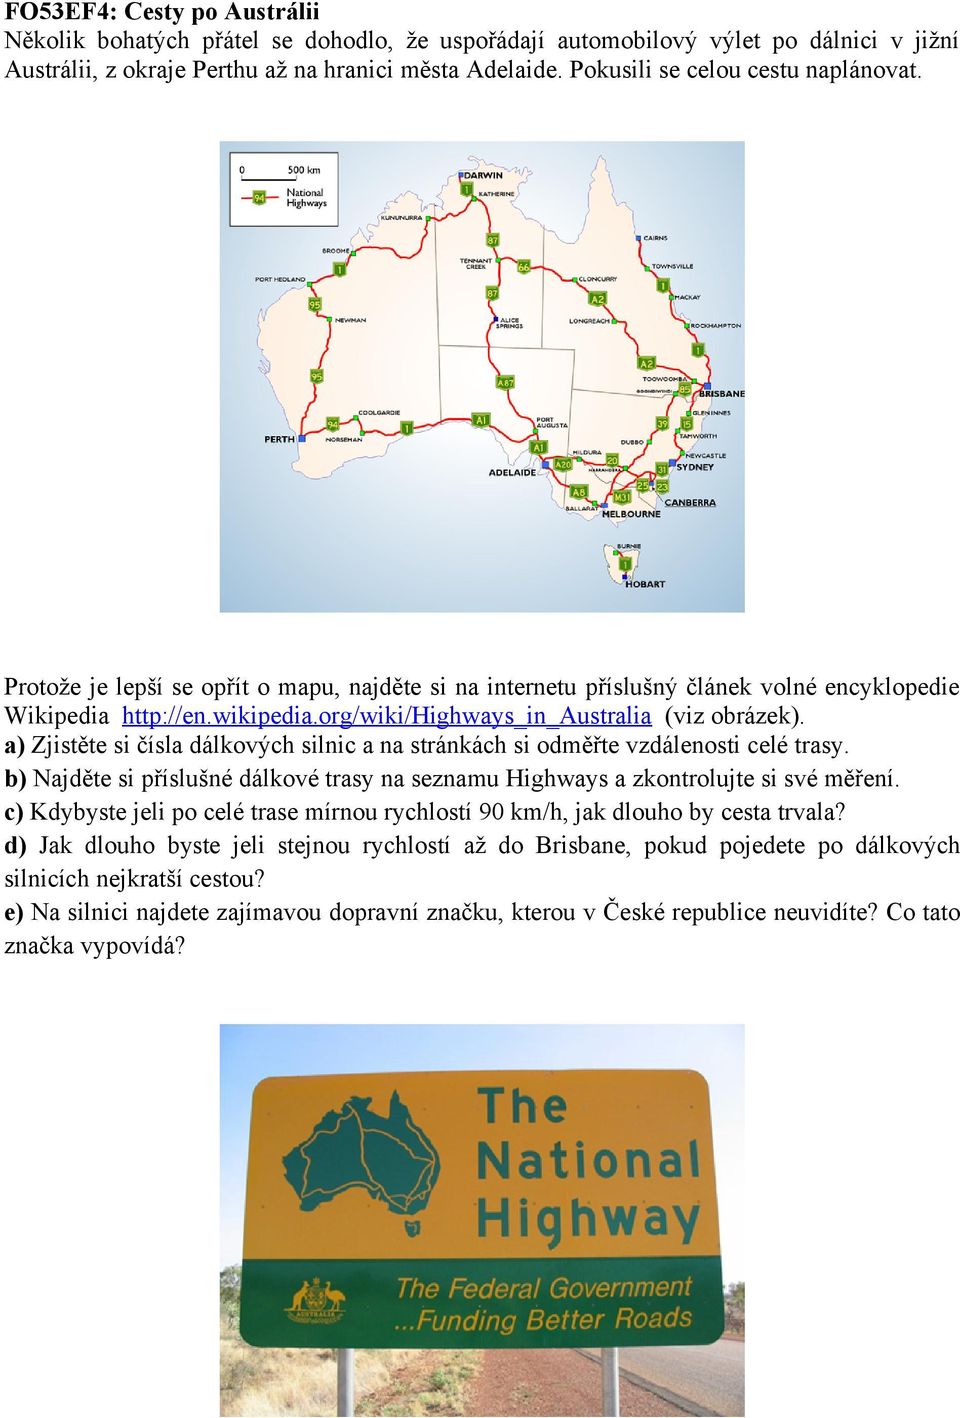 org/wiki/highways_in_australia (viz obrázek). a) Zjistěte si čísla dálkových silnic a na stránkách si odměřte vzdálenosti celé trasy.